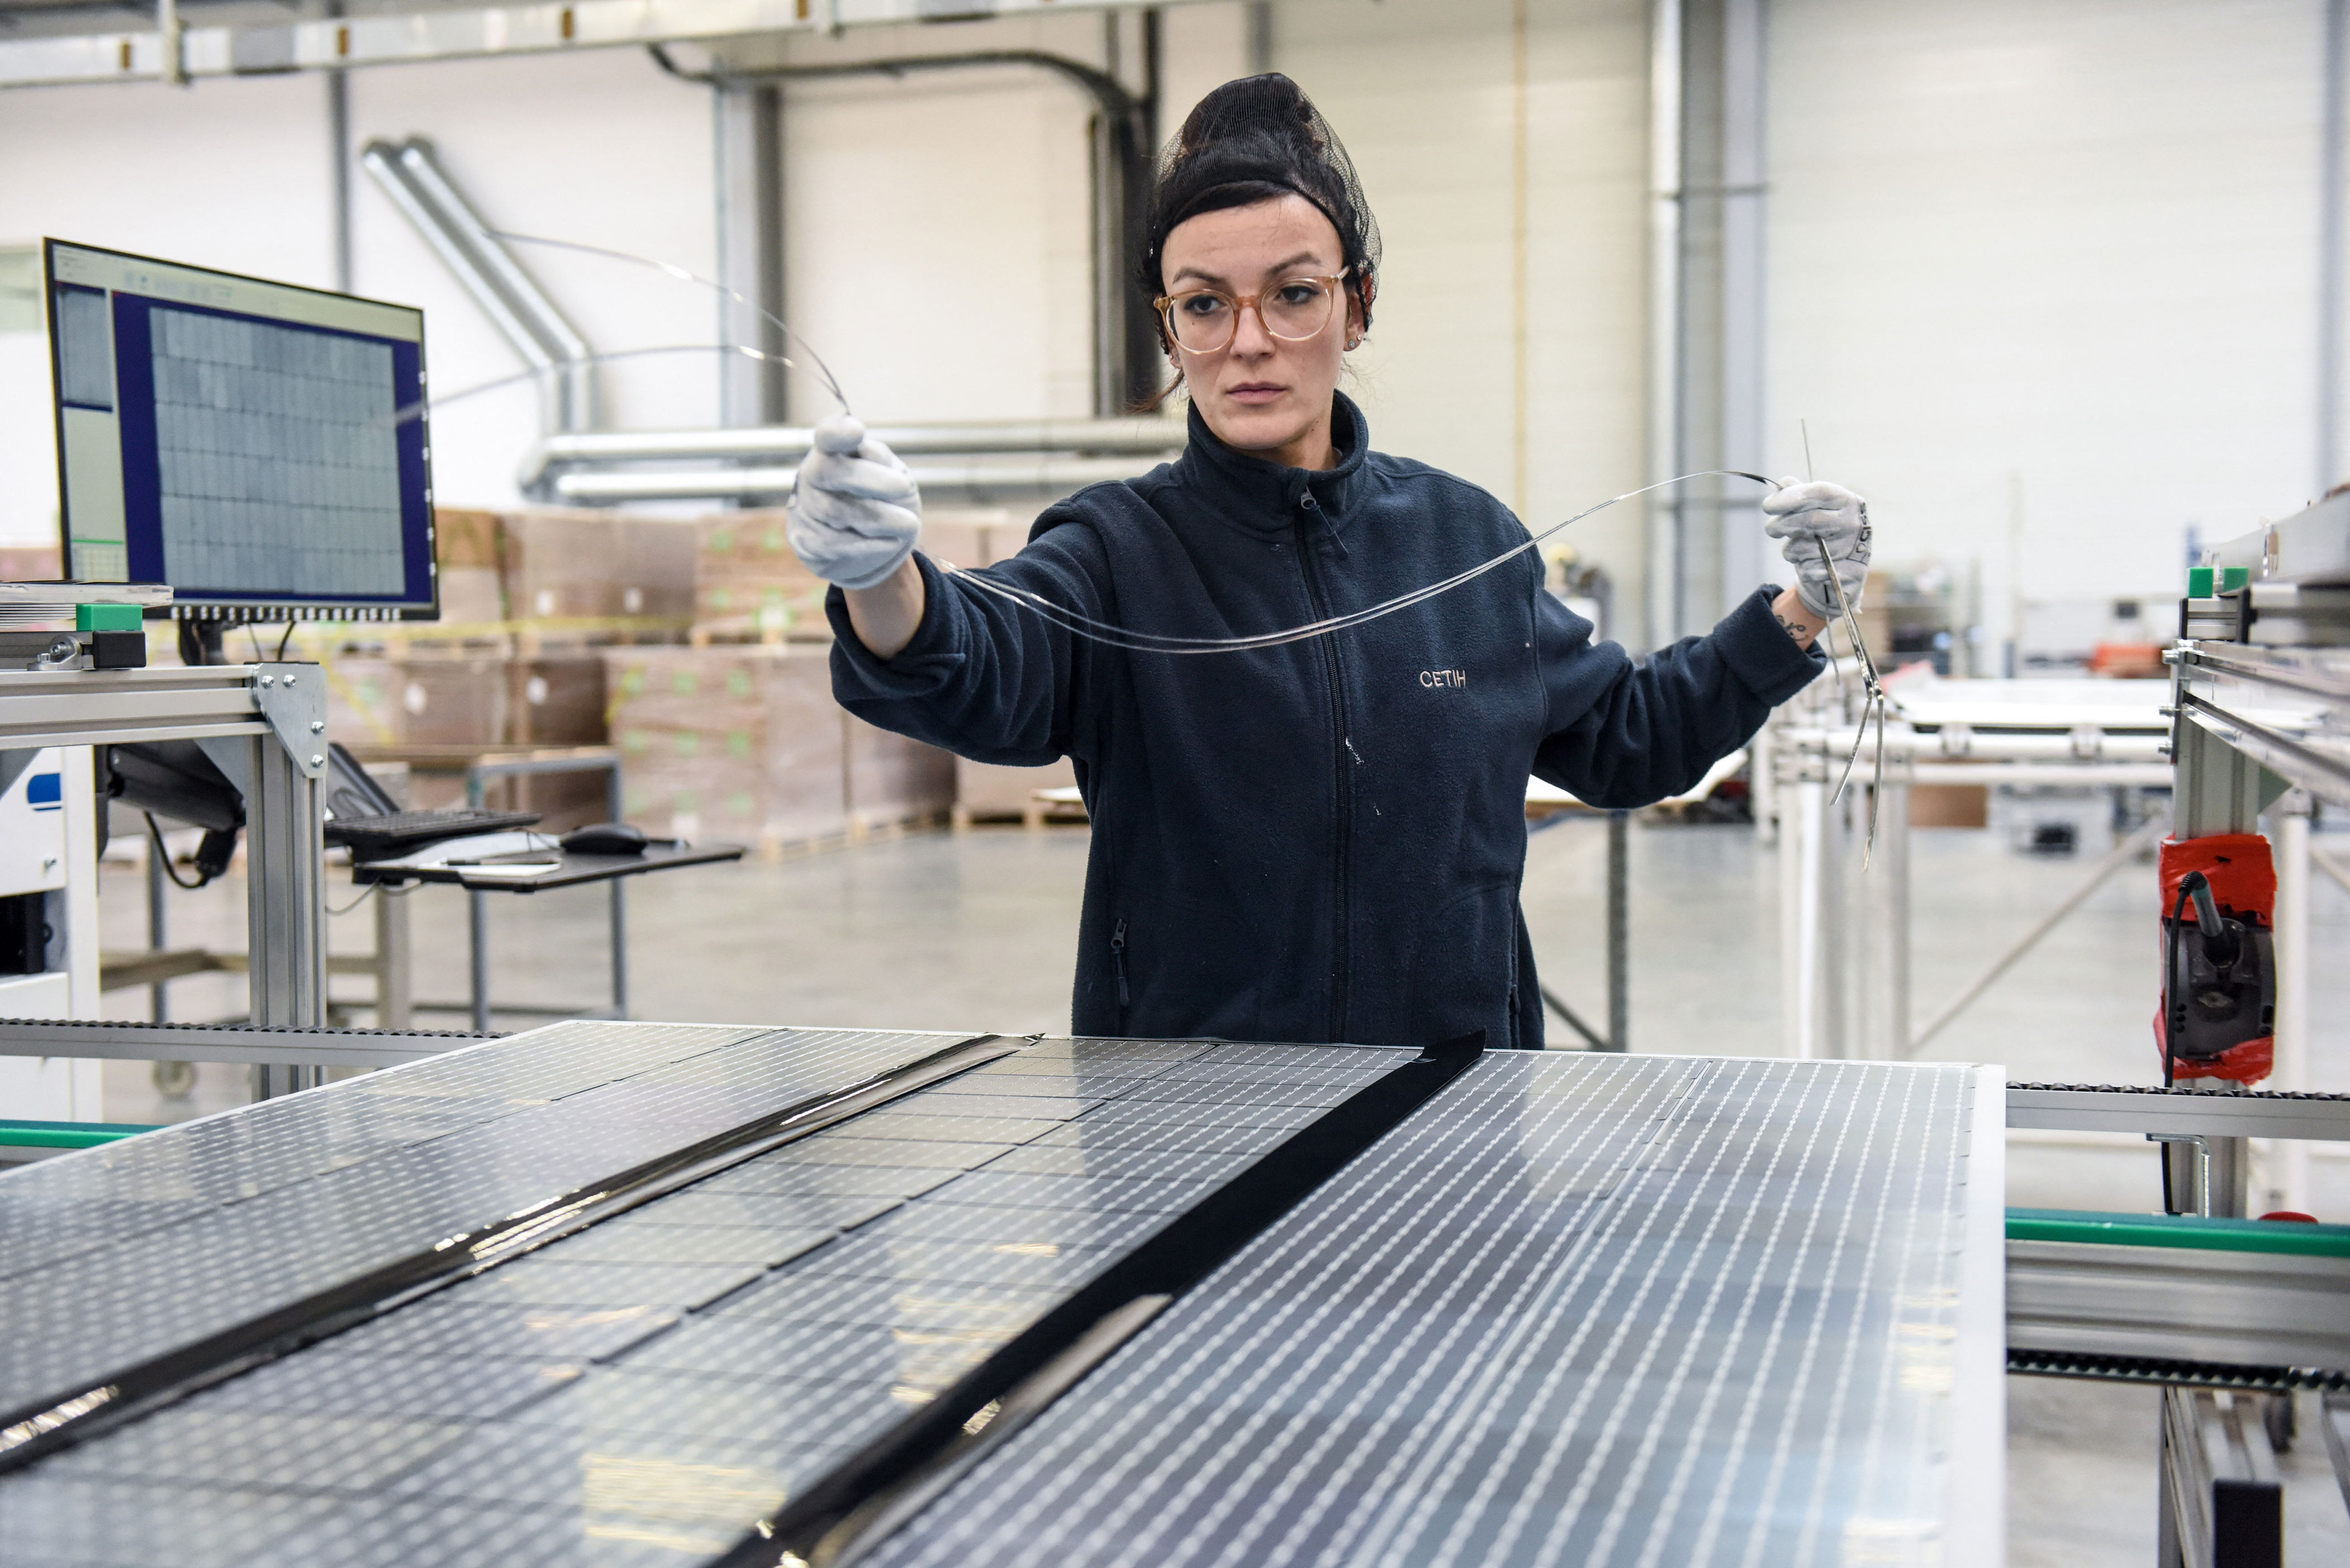 panneaux solaires : concurrencé par la chine, systovi, l’un des derniers fabricants français, ferme son usine